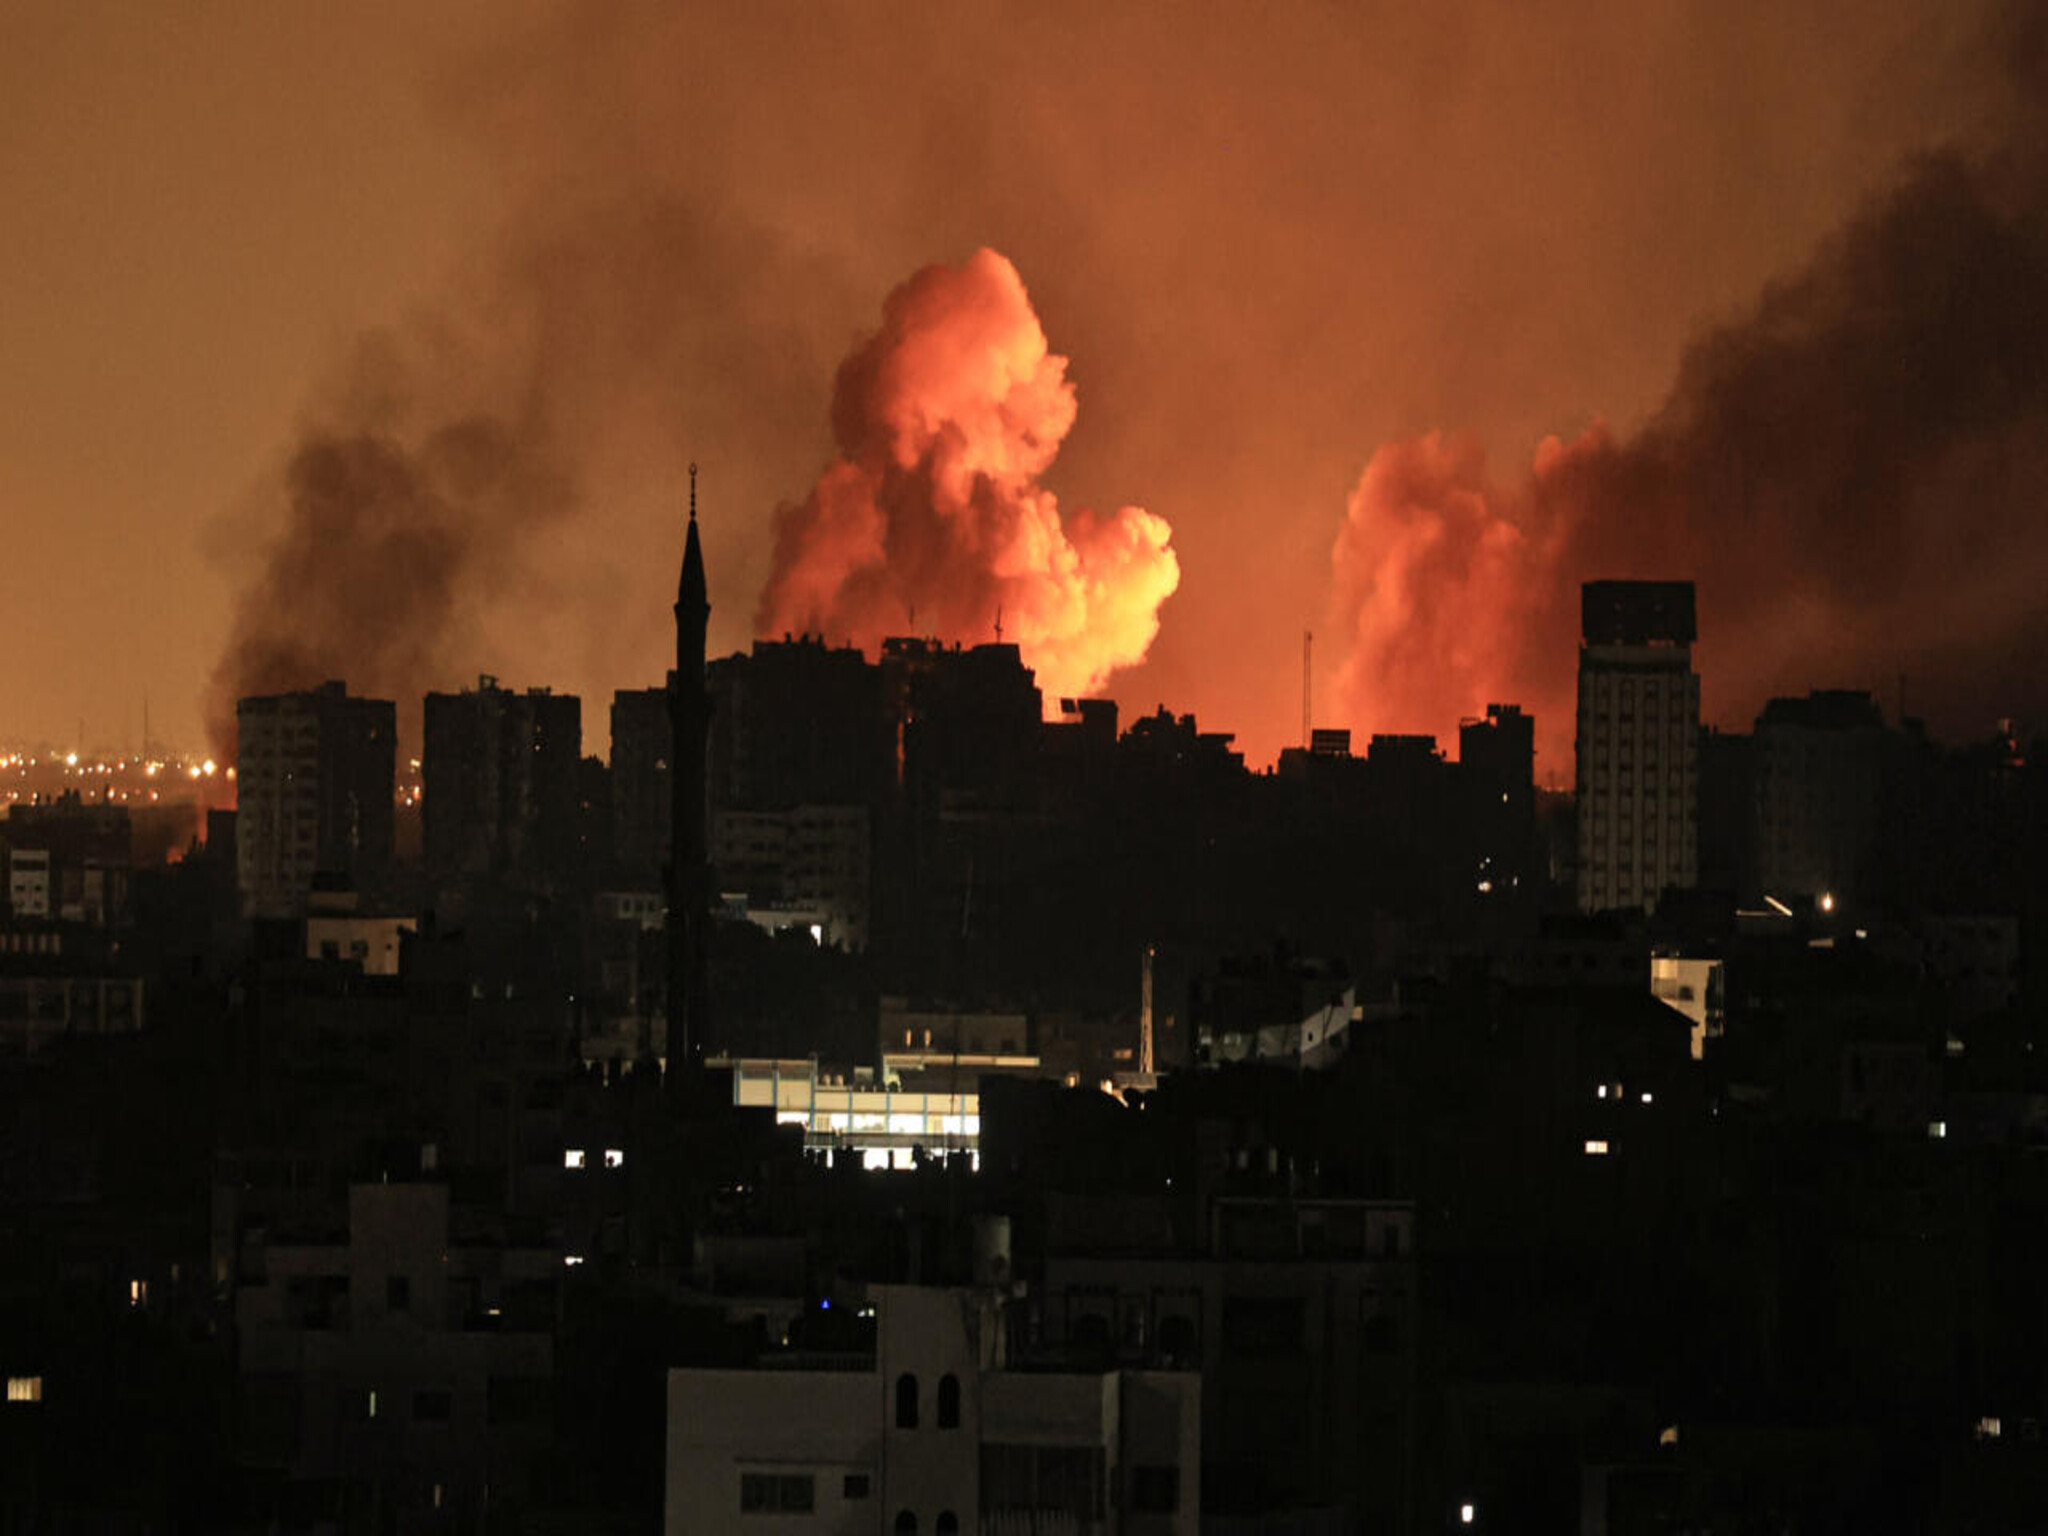 الأمم المتحدة تطلق نداء لجمع أموال من أجل قطاع غزة والضفة الغربية